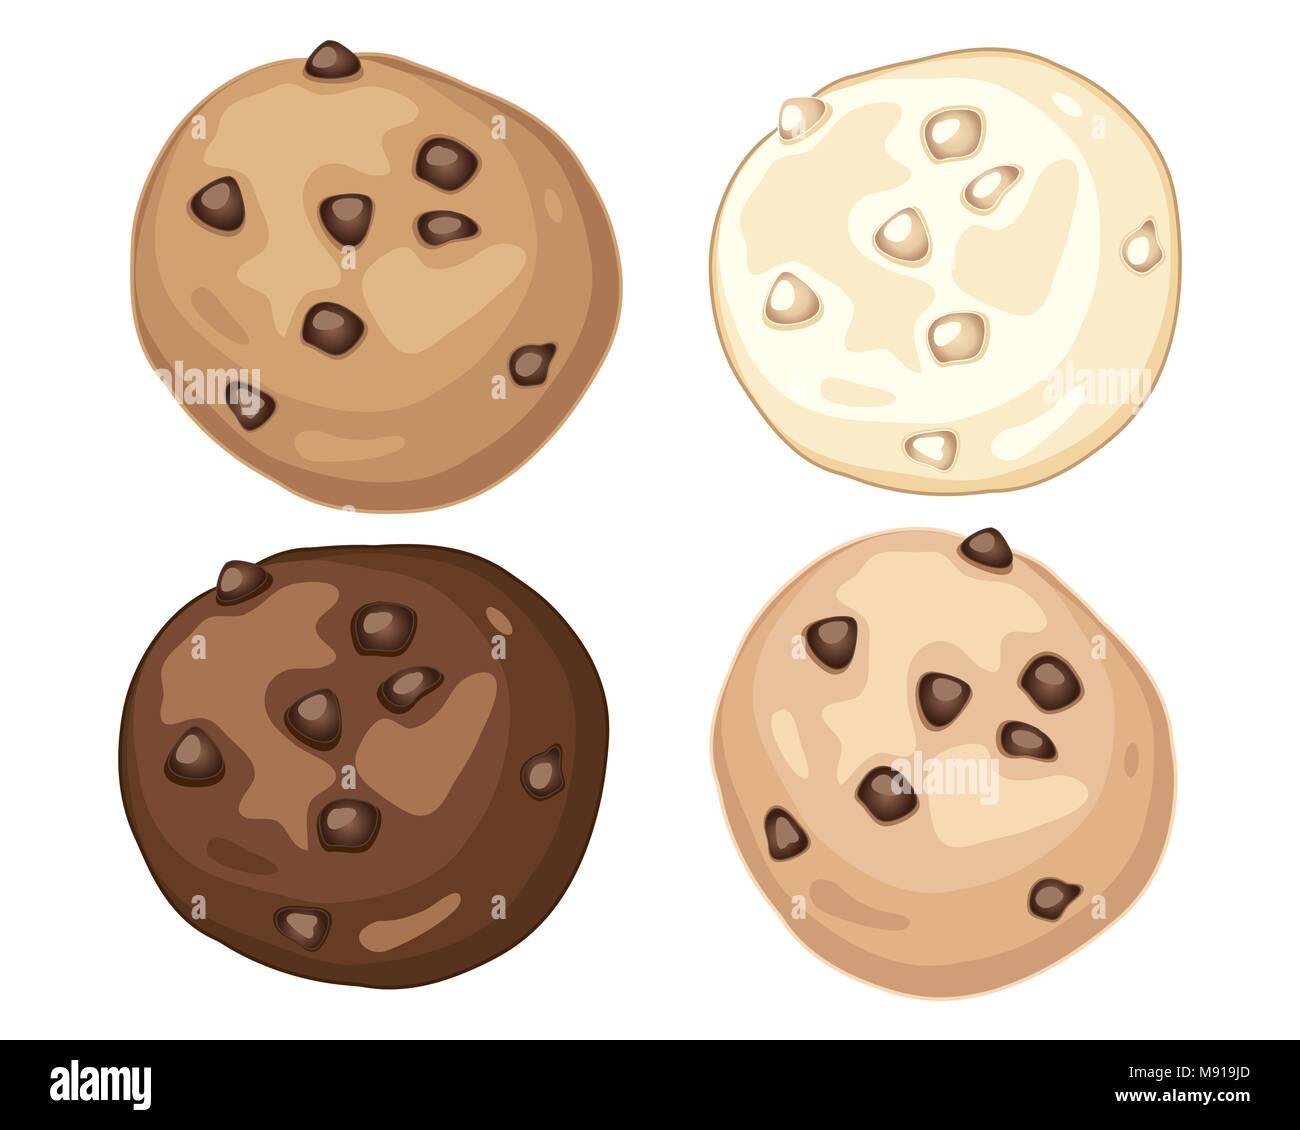 Un vecteur illustration en eps 10 format d'une publicité visuelle pour la maison de biscuits aux pépites de chocolat au lait et chocolat blanc sur un fond blanc Illustration de Vecteur